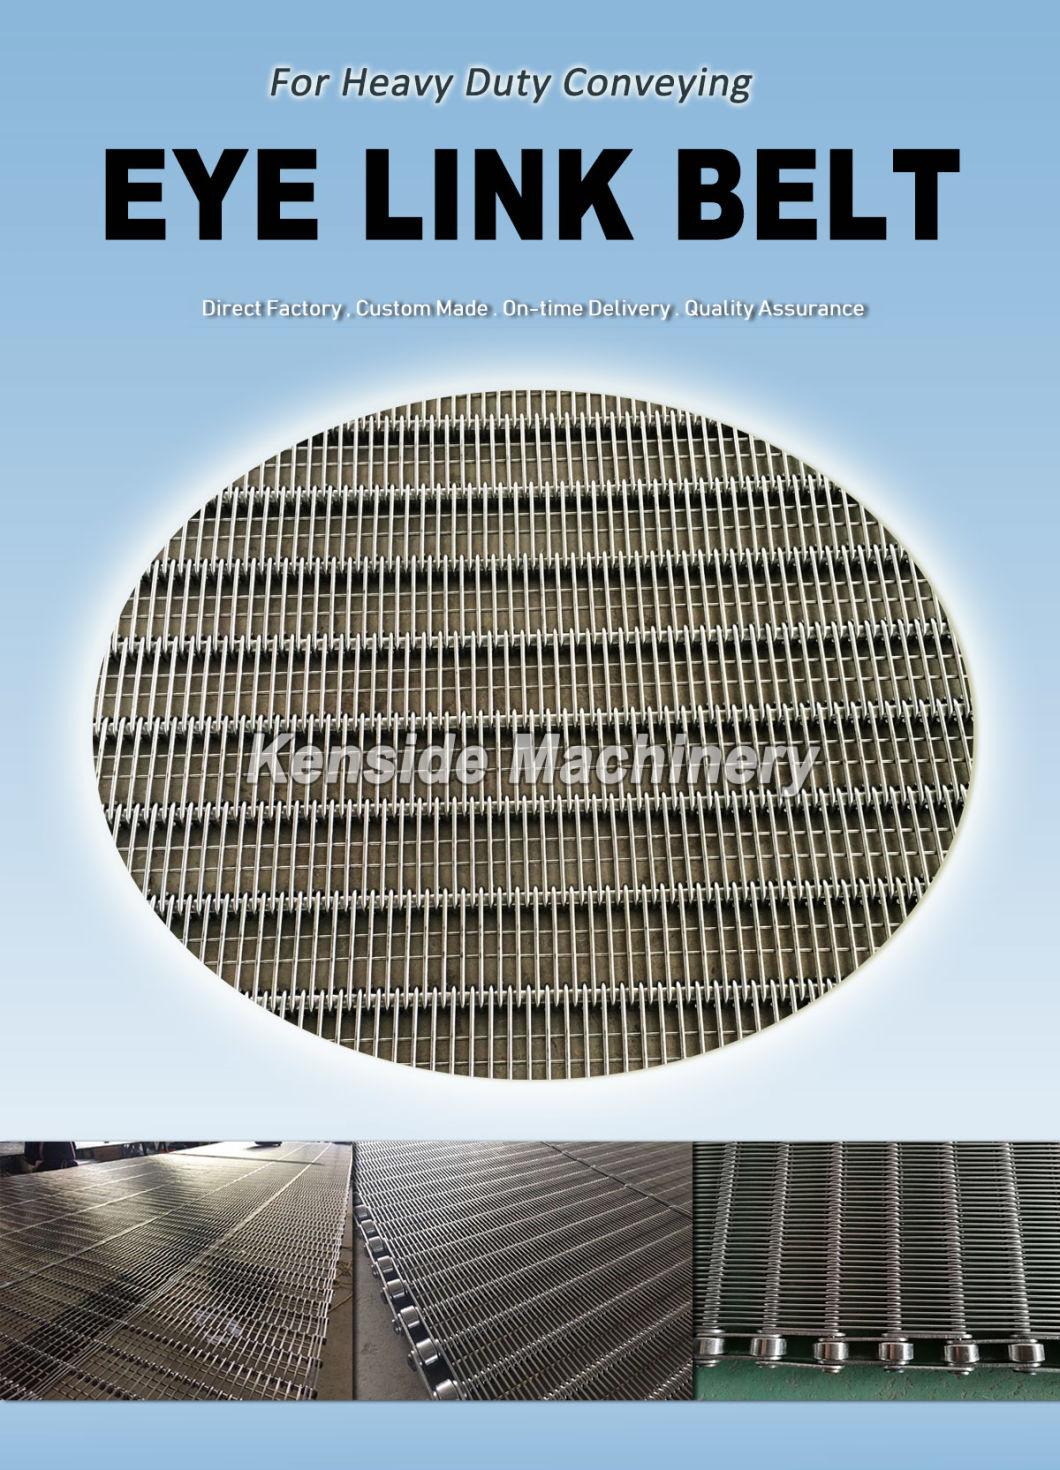 Eye Link Belt for Cooling Processing